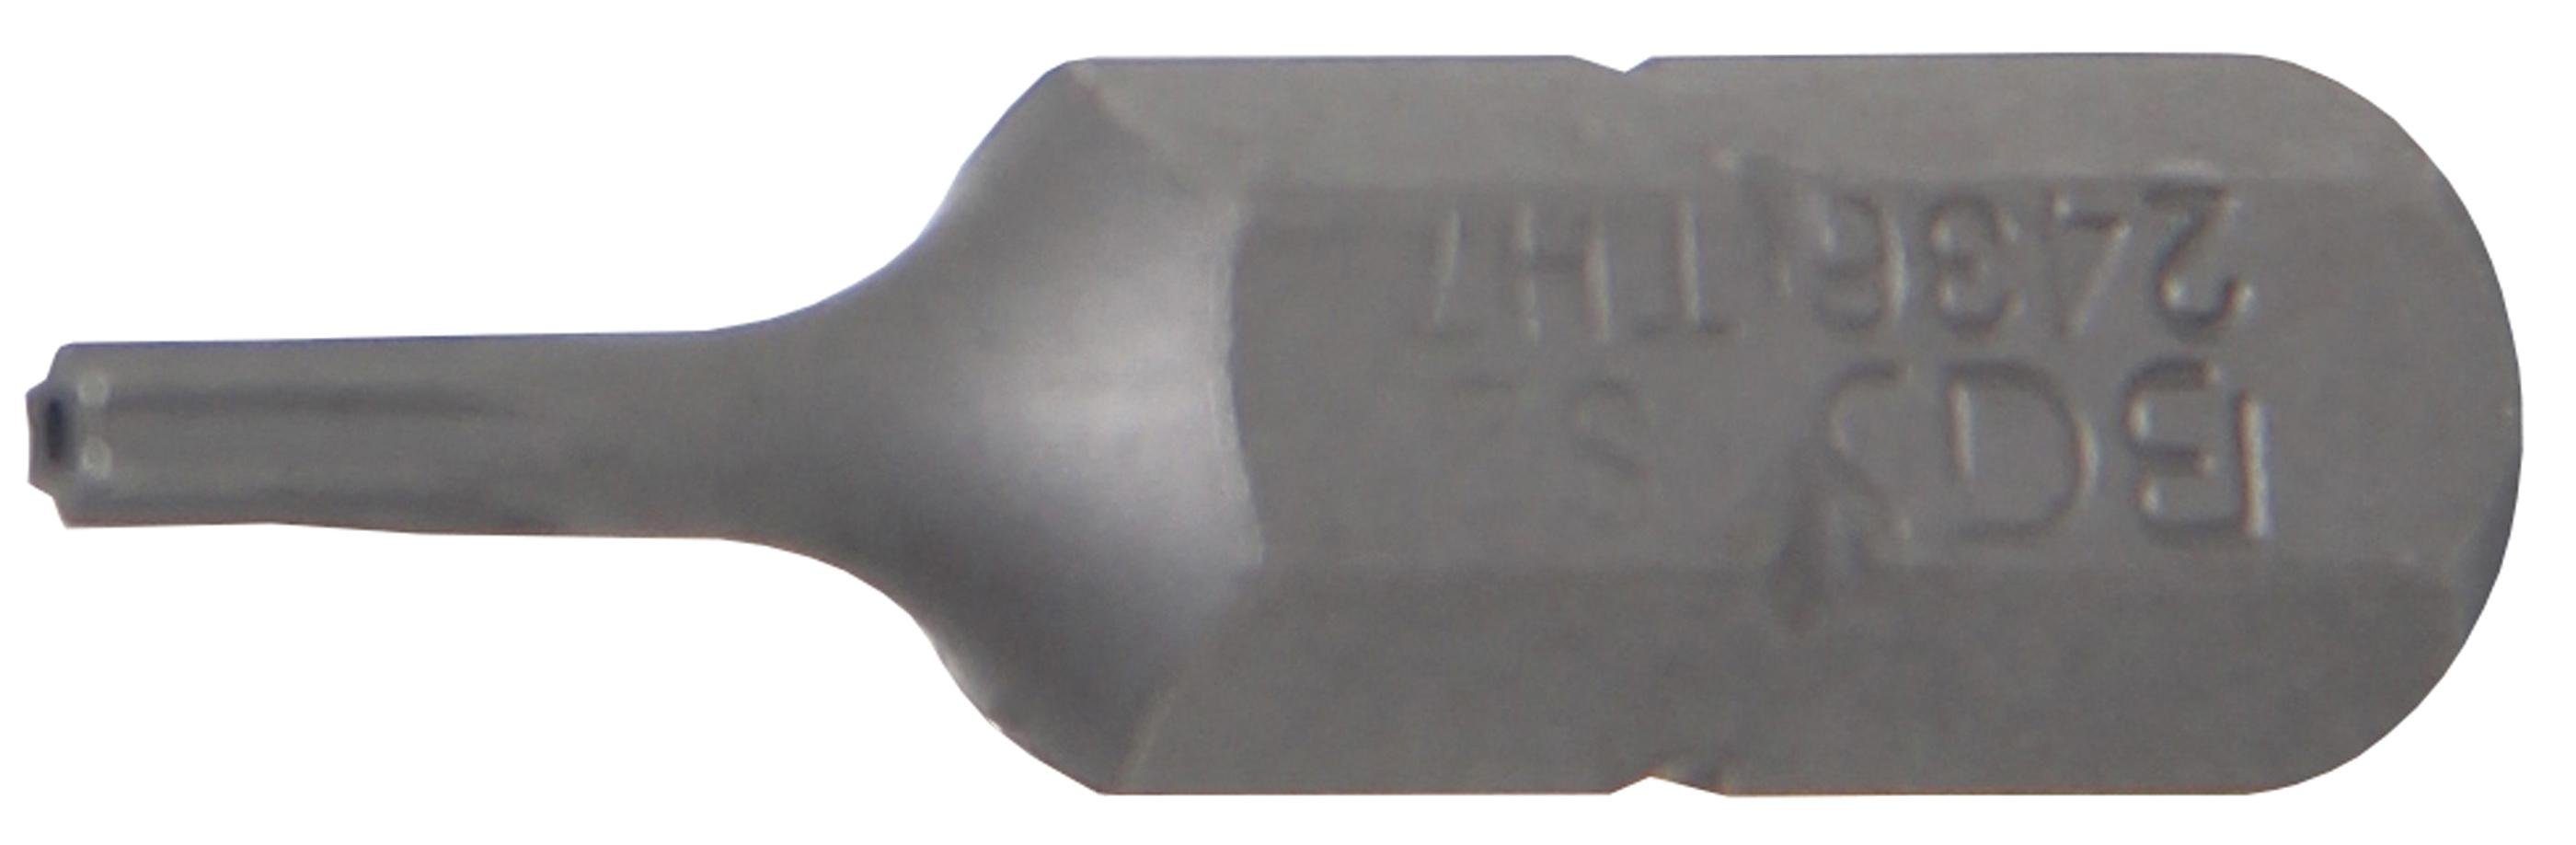 BGS technic Bit-Schraubendreher Bit, Antrieb Außensechskant 6,3 mm (1/4), T-Profil (für Torx) mit Bohrung T7